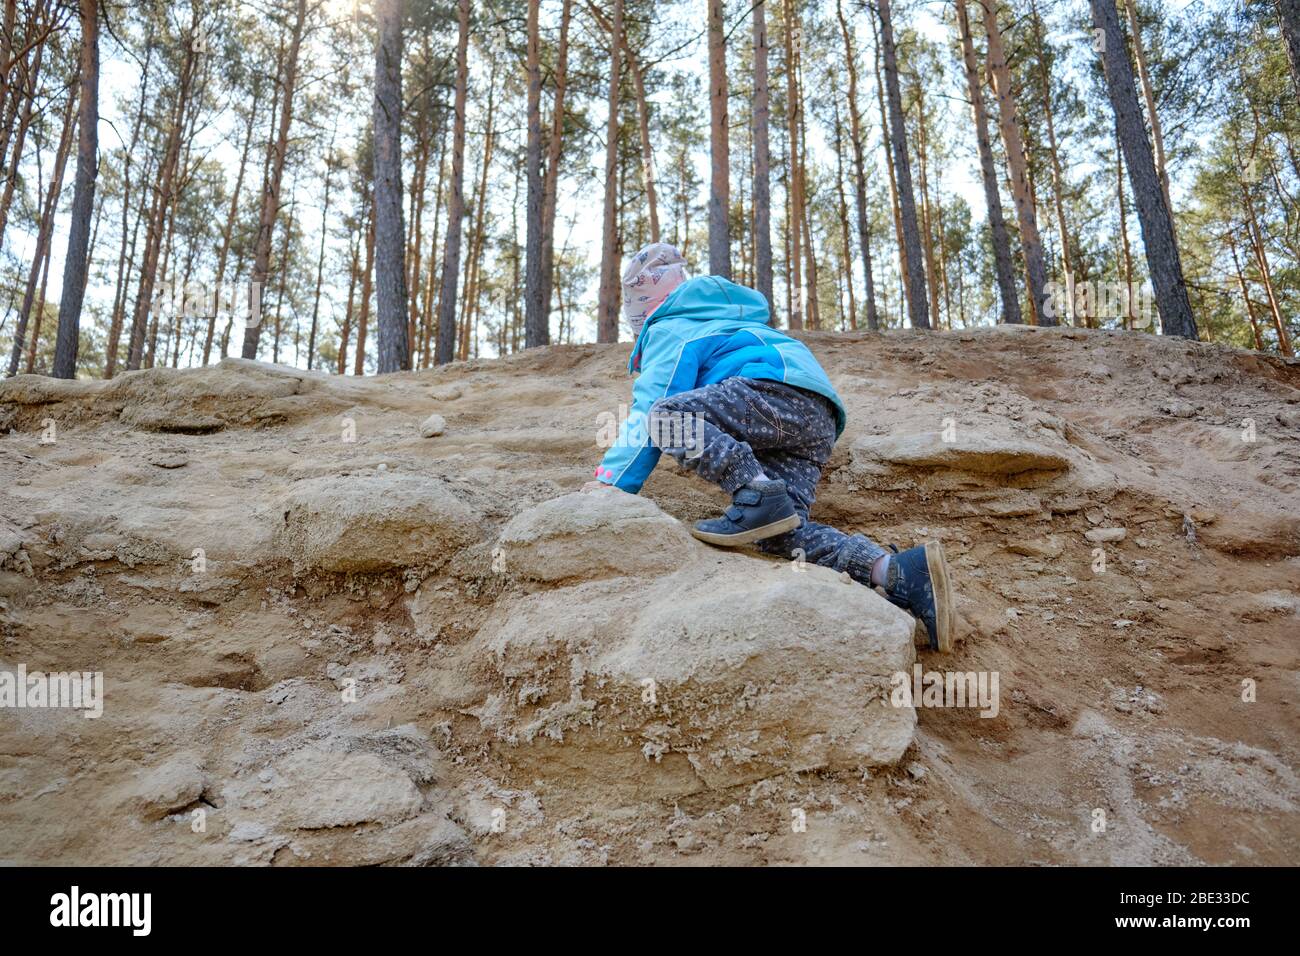 Vue arrière d'une fille caucasienne de 4 ans en pleine longueur grimpant sur un terrain escarpé avec du grès lors d'une belle journée de printemps dans la forêt de GE Banque D'Images